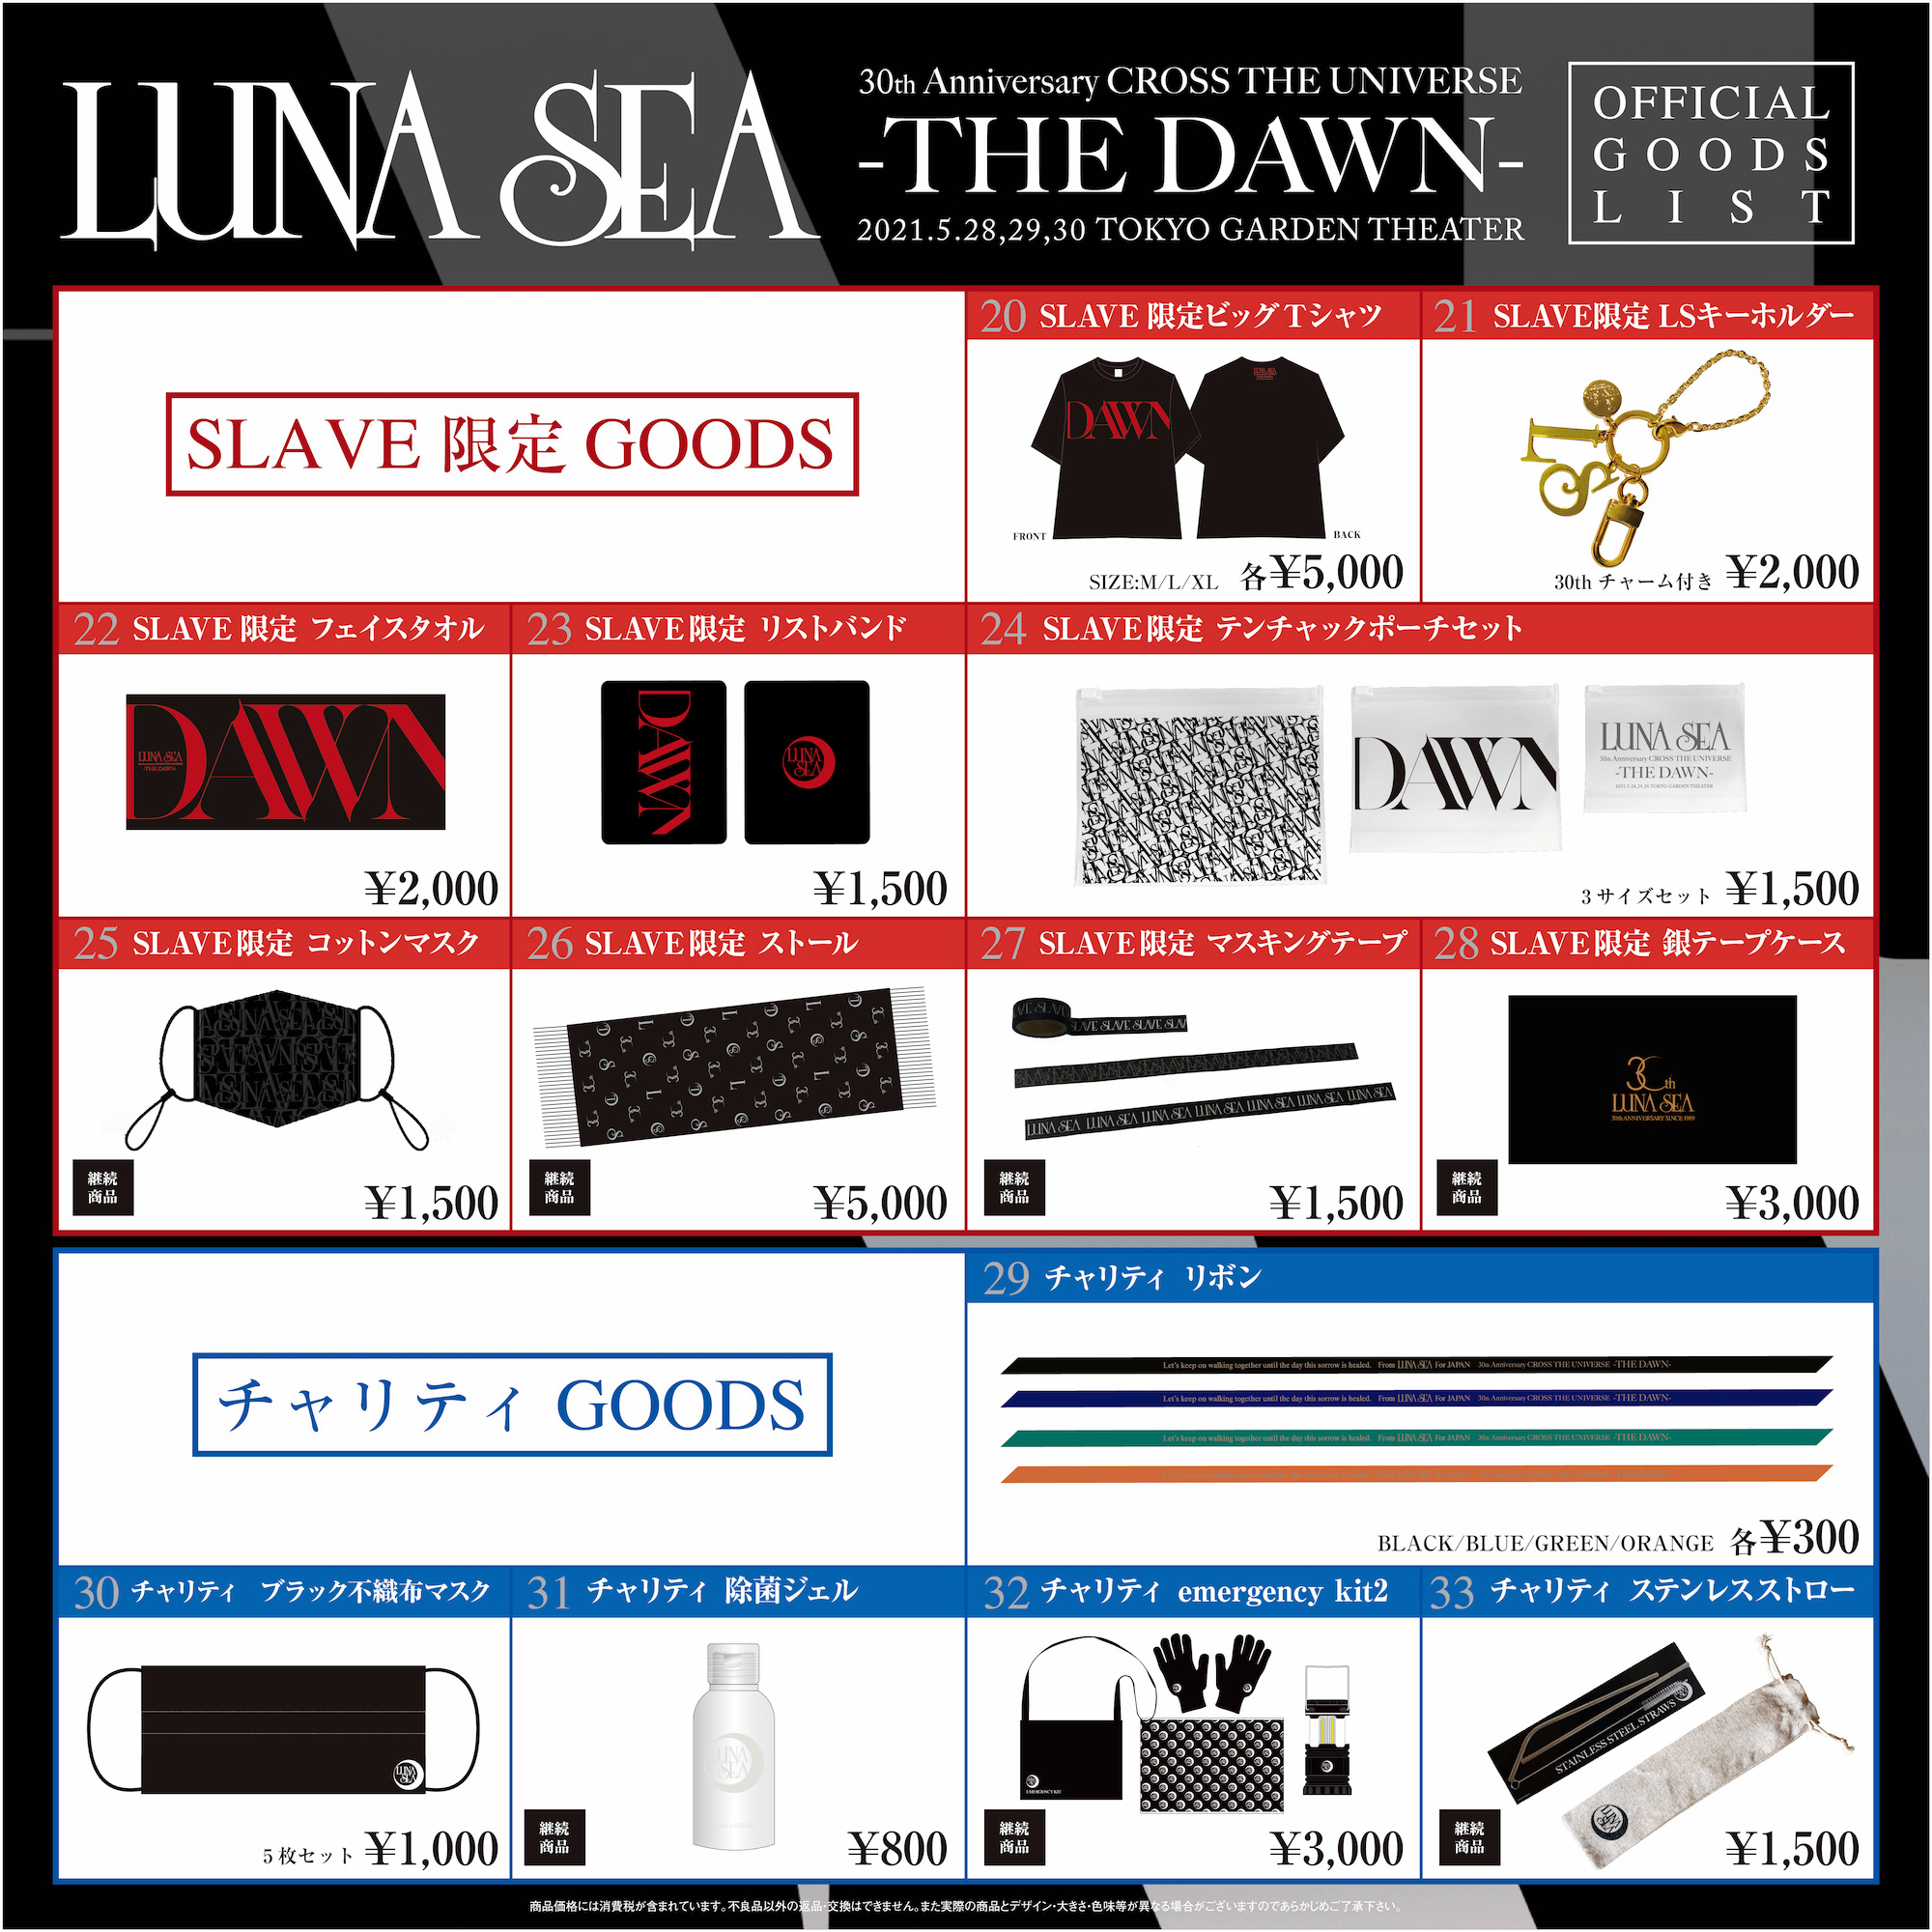 LUNA SEA 30th Anniversary CROSS THE UNIVERSE -THE DAWN- オリジナル 